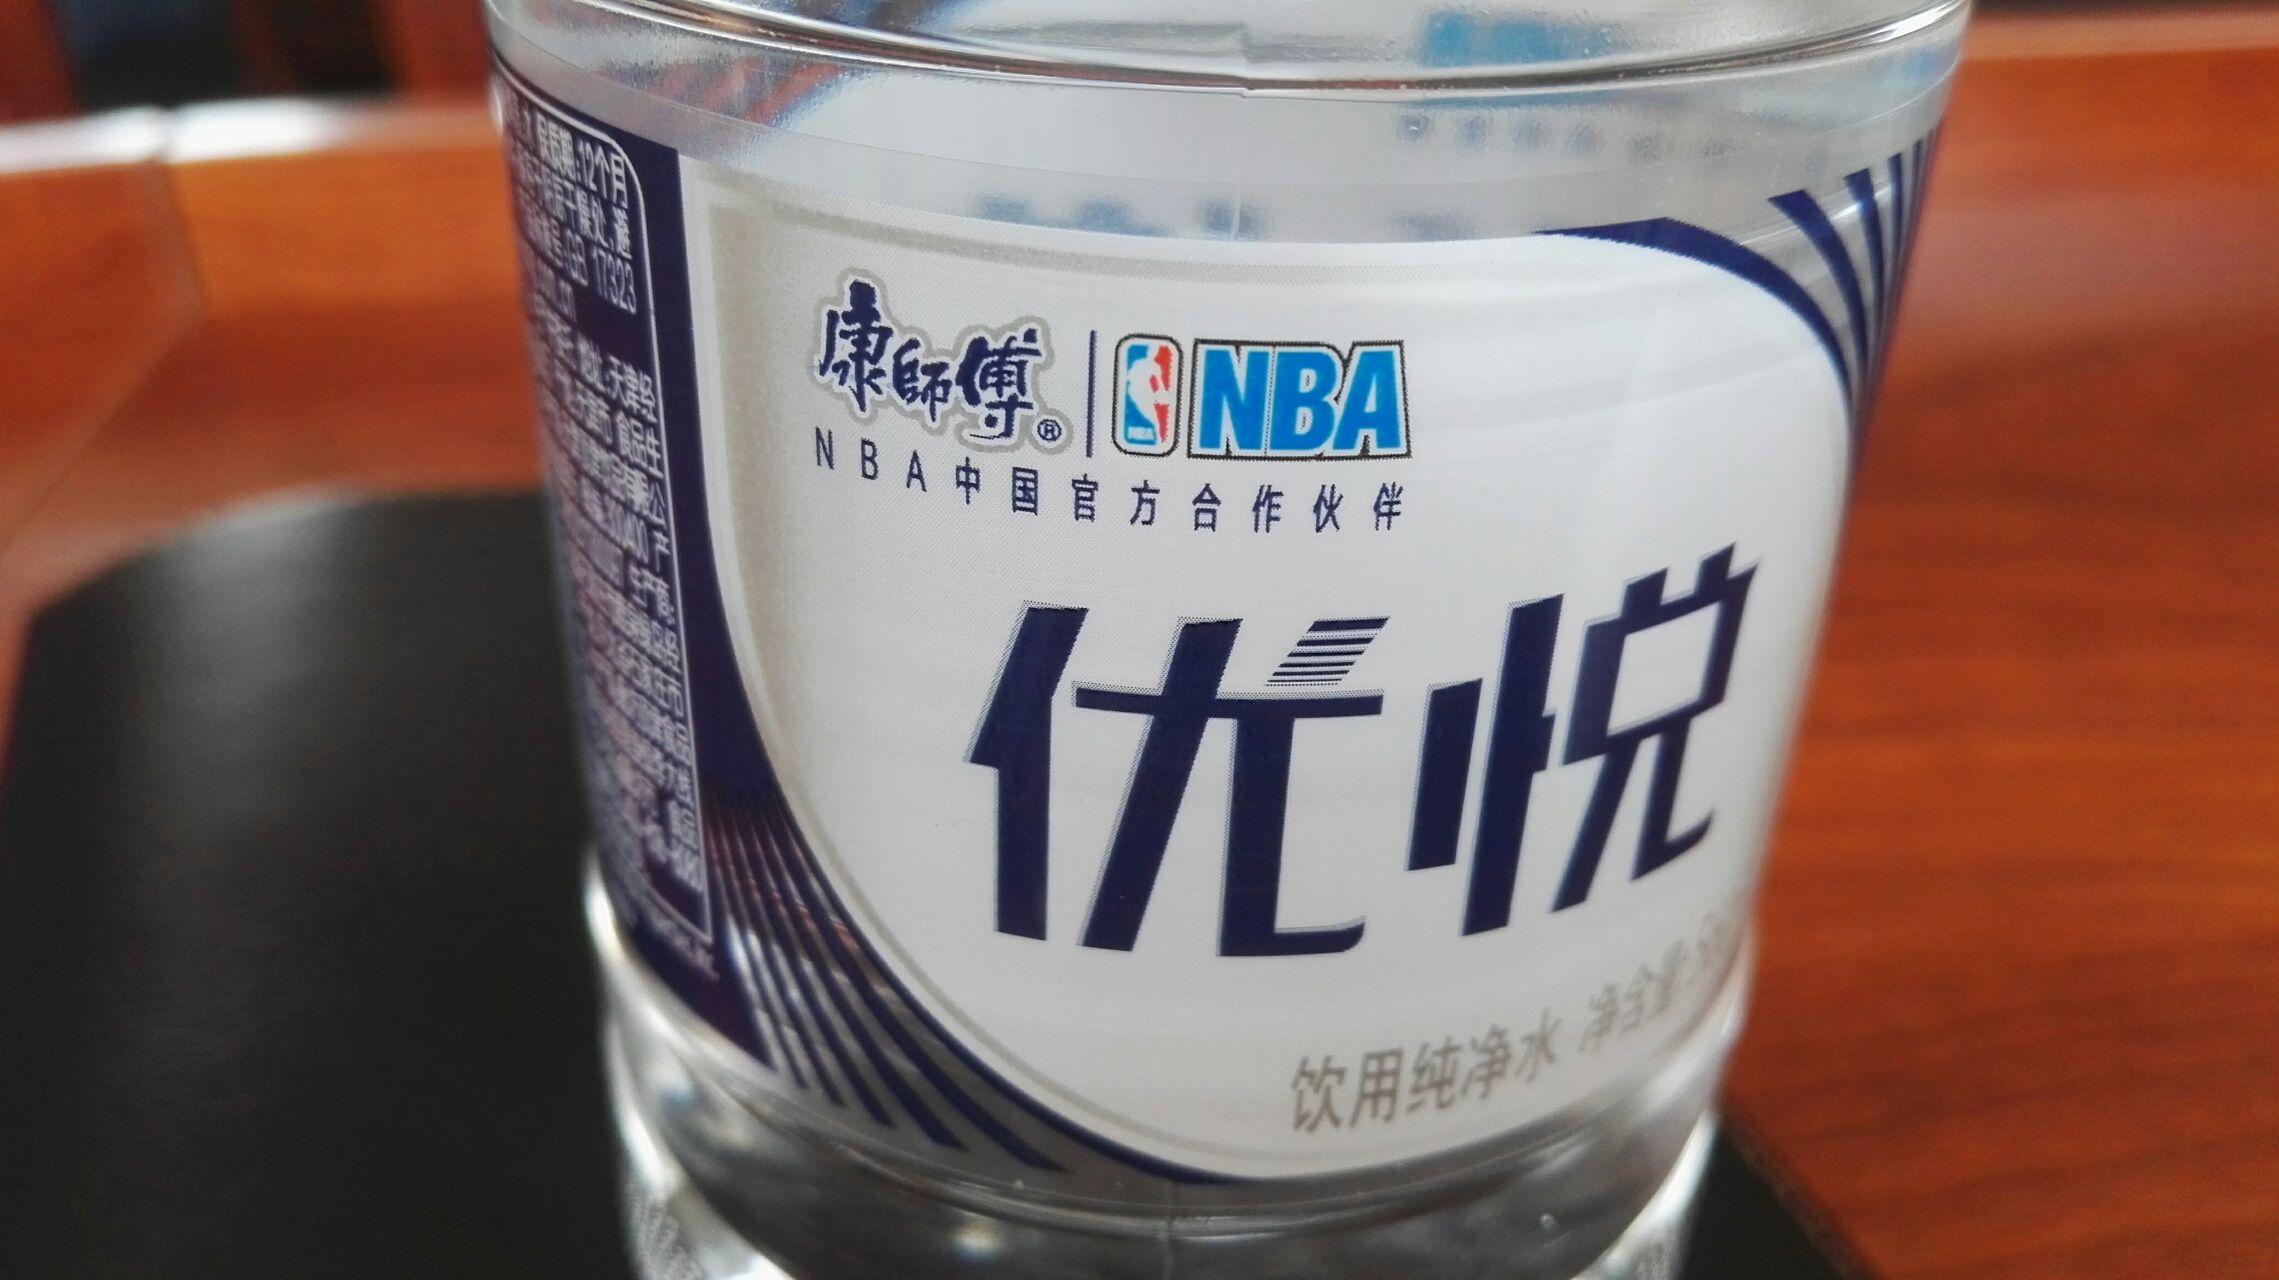 NBA中国官方是个什么组织? - 商业法律